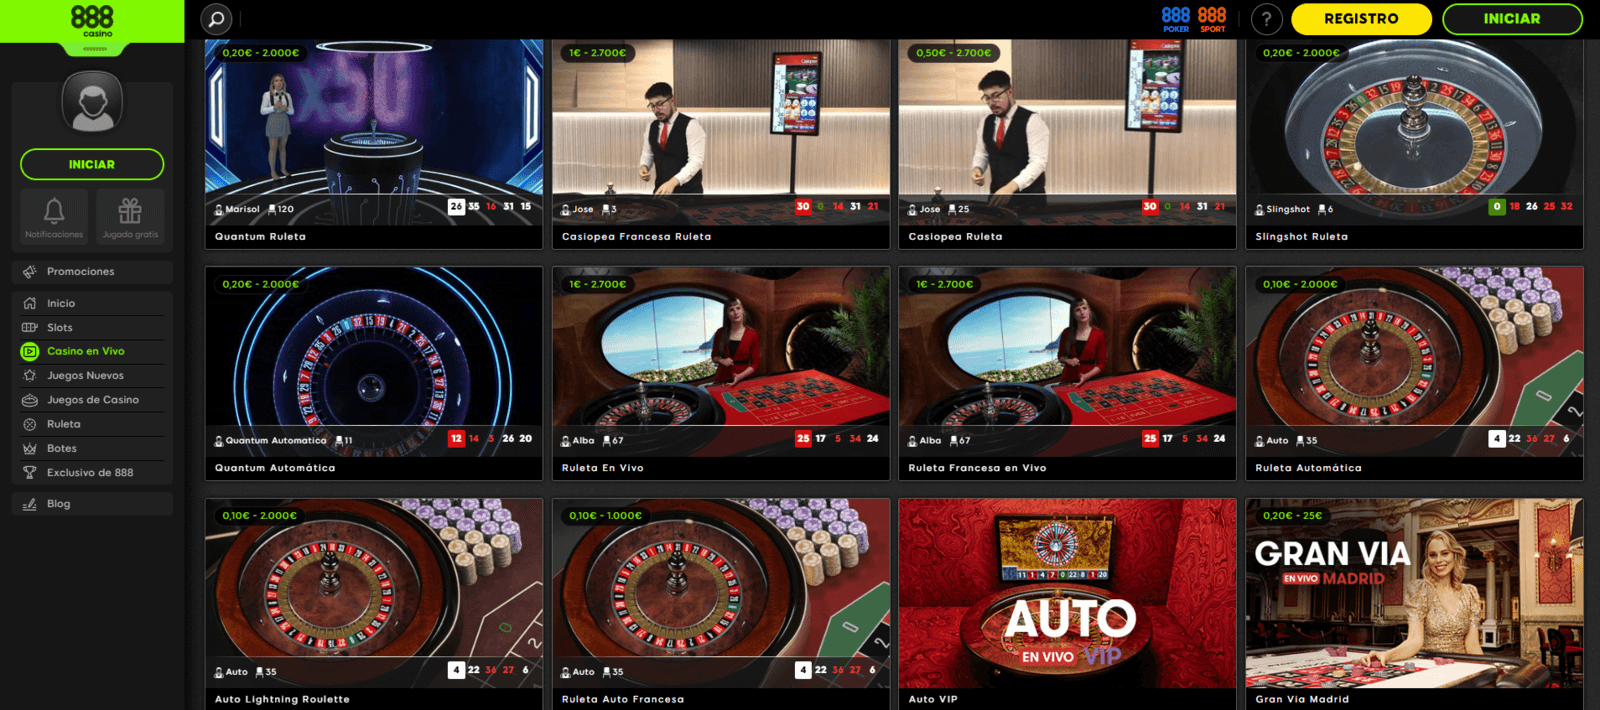 Jugar en vivo en 888 Casino online por dinero real en 888.es